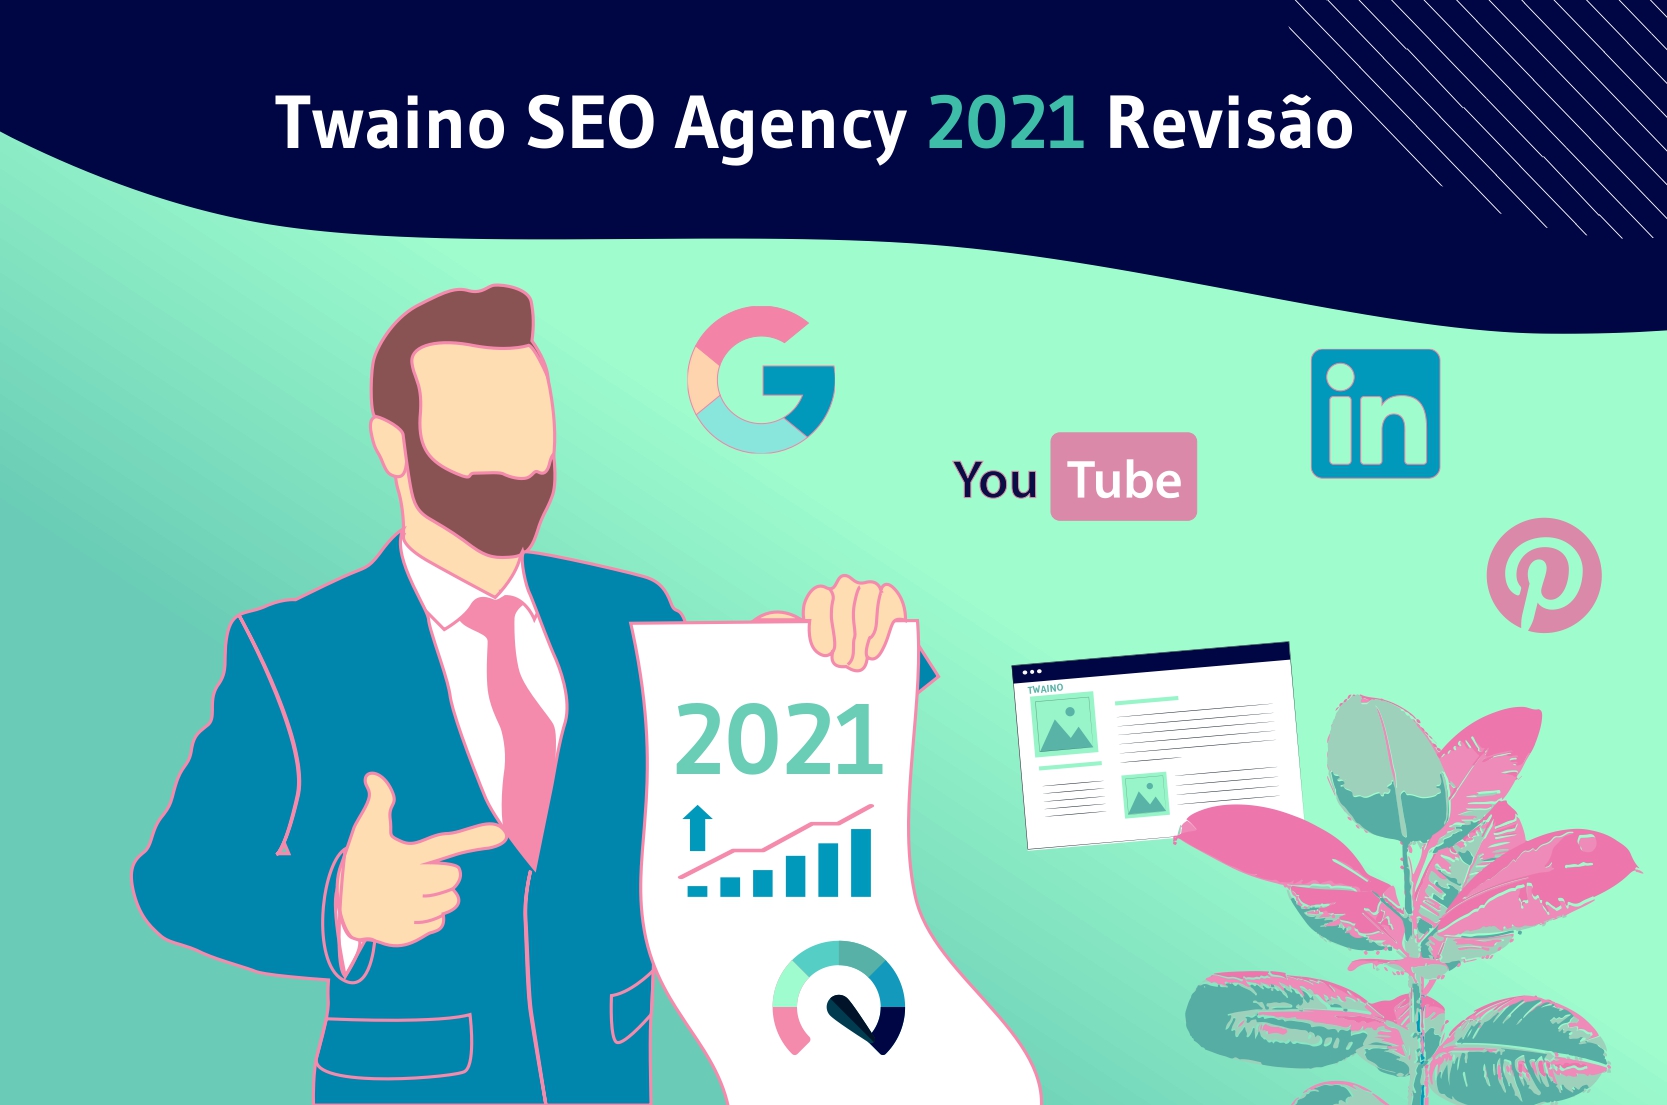 Twaino SEO Agency 2021 revisao